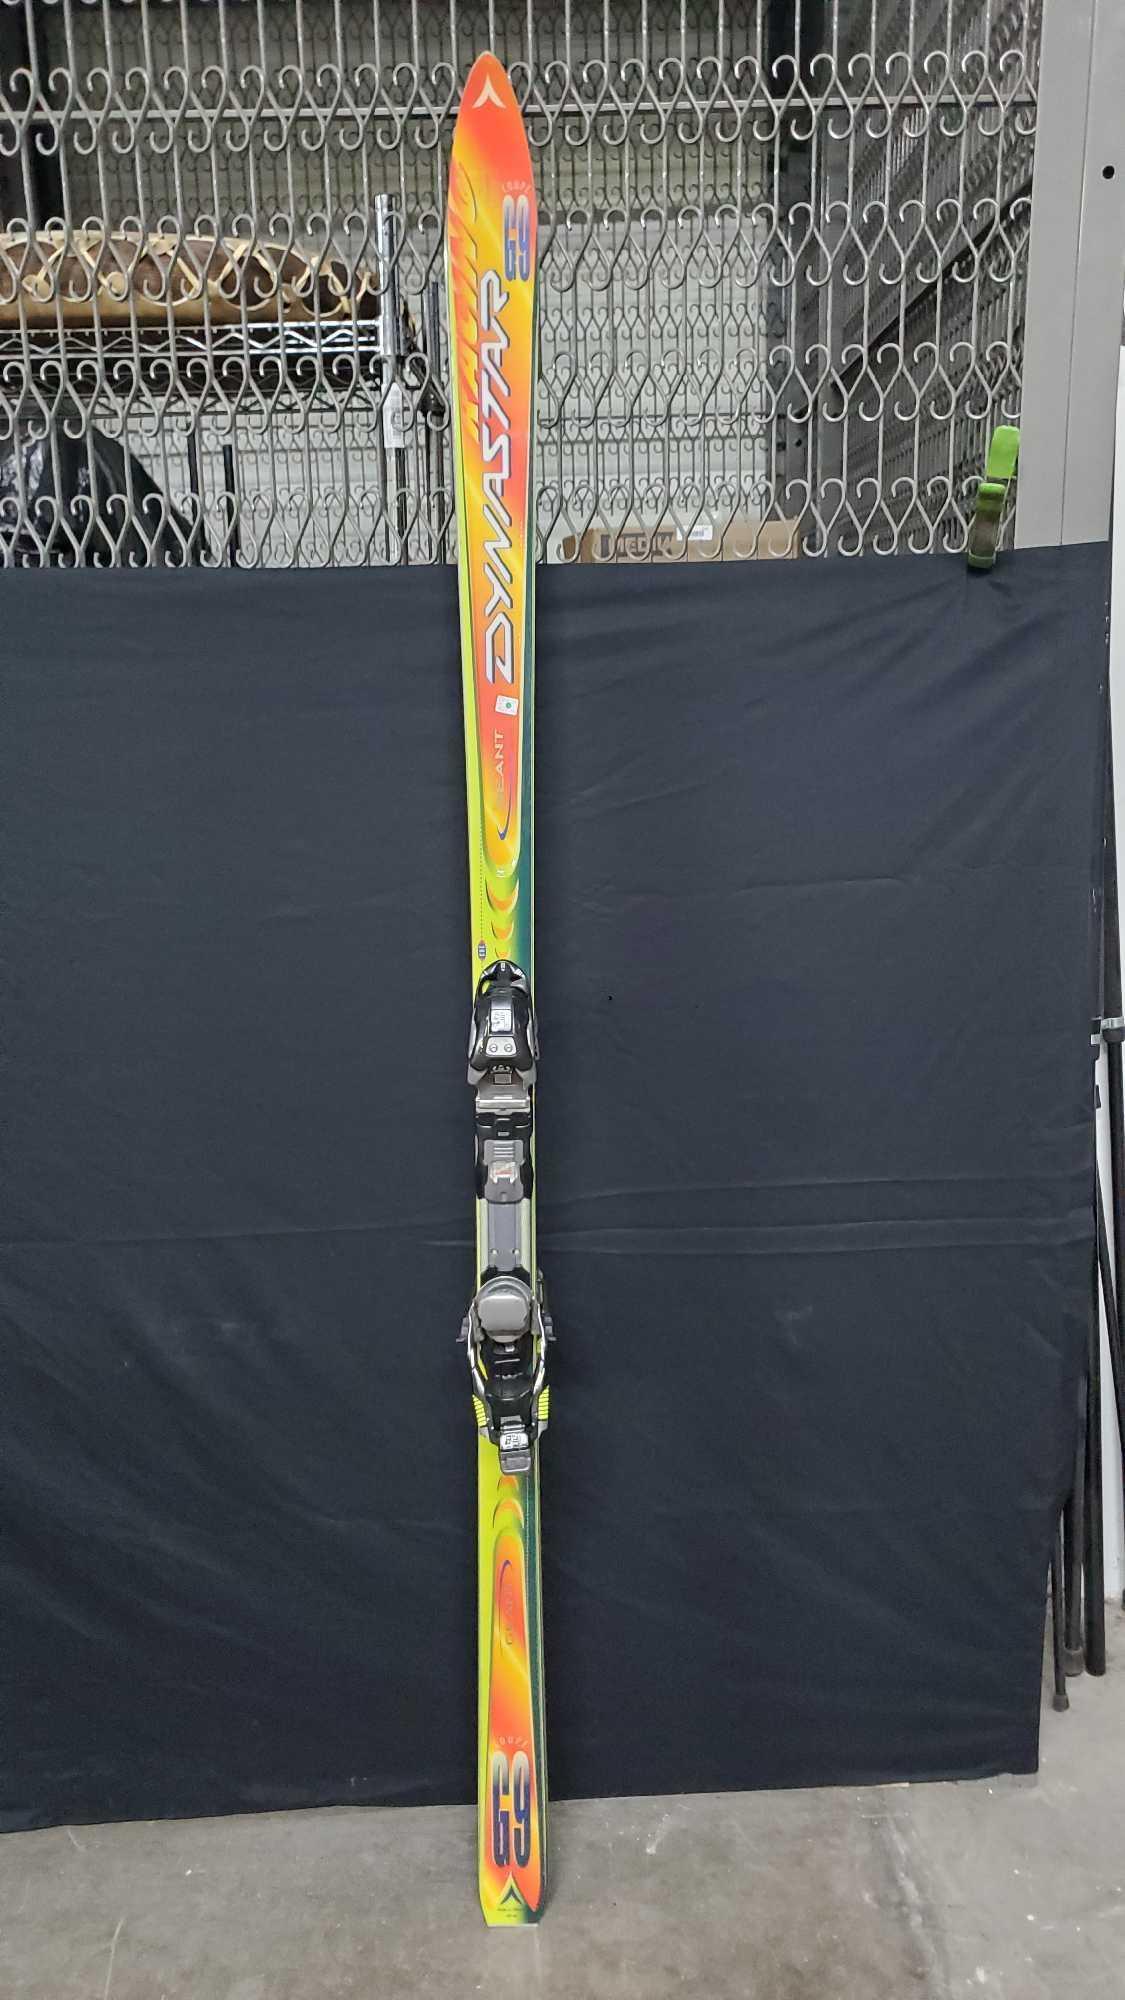 Pair of Geant Dynastar G9 racing skis